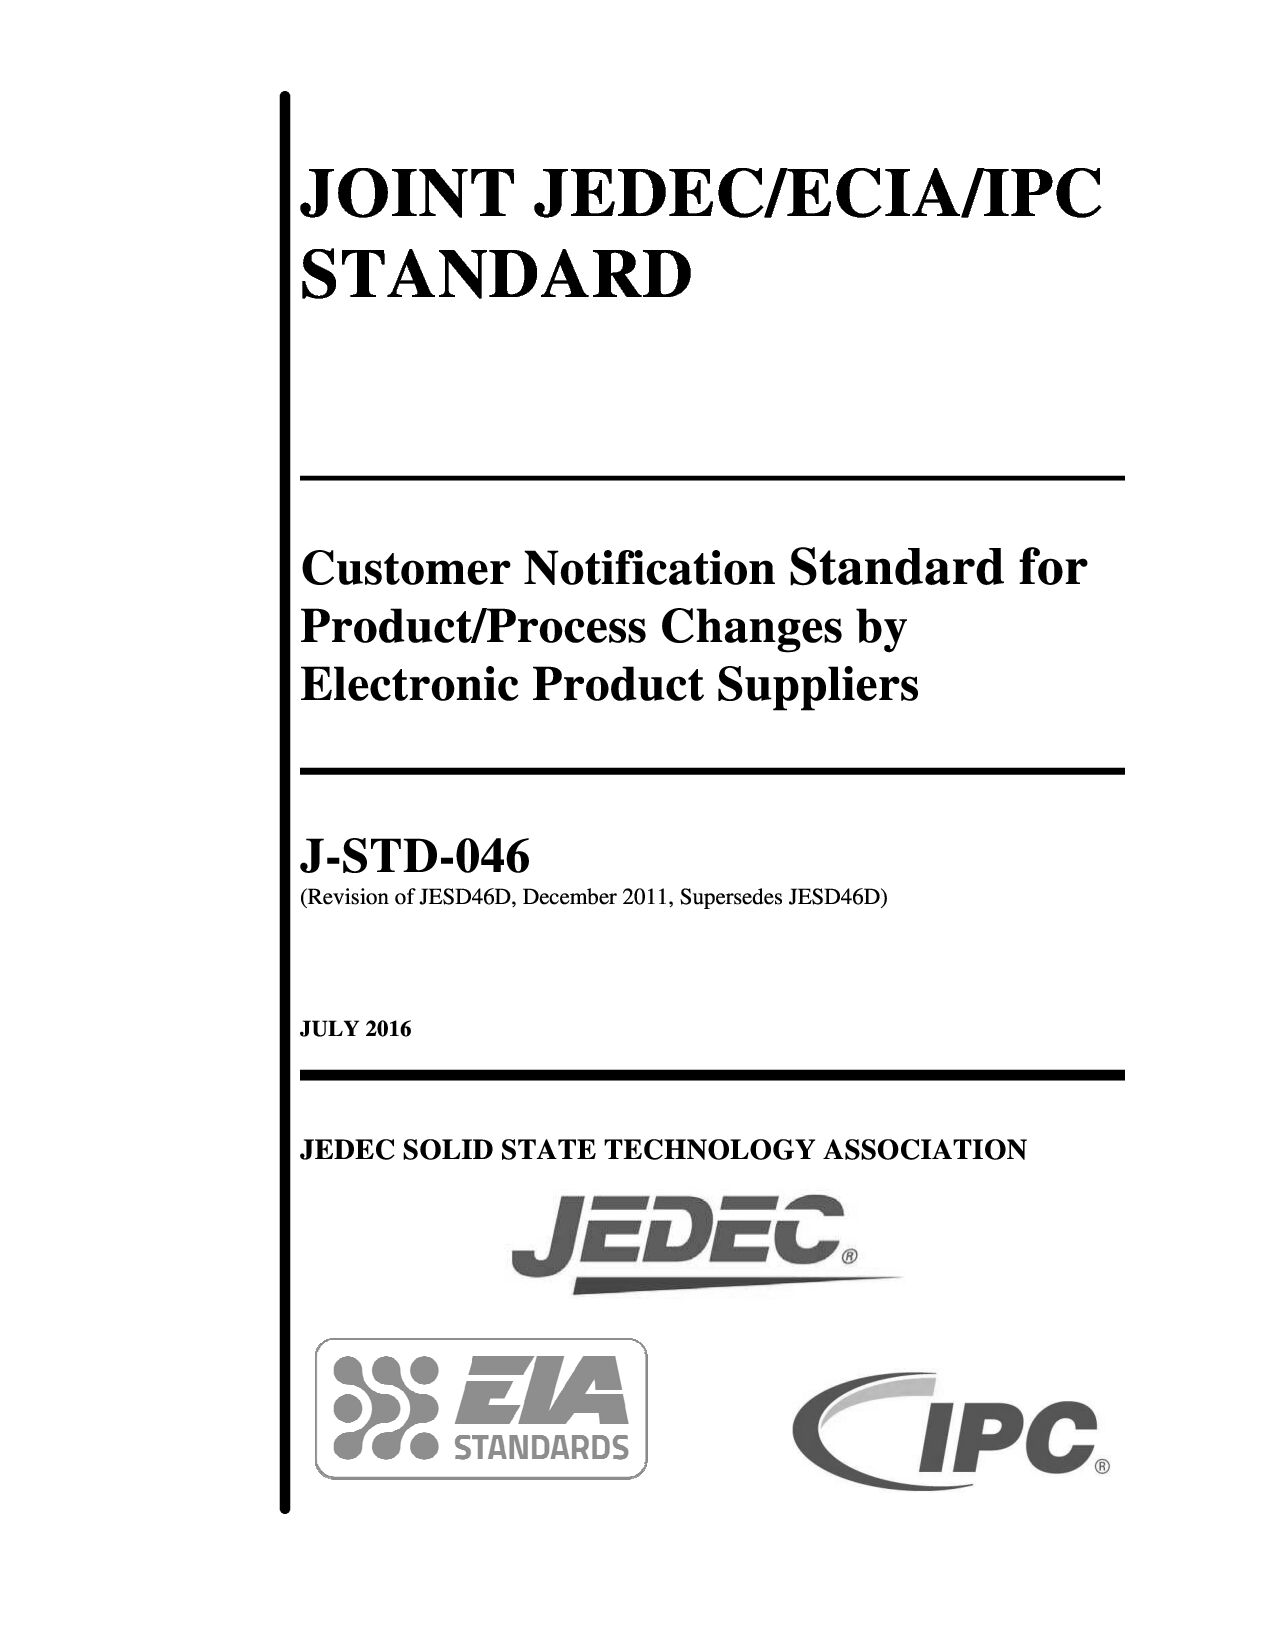 JEDEC ECIA IPC J-STD-046-2016